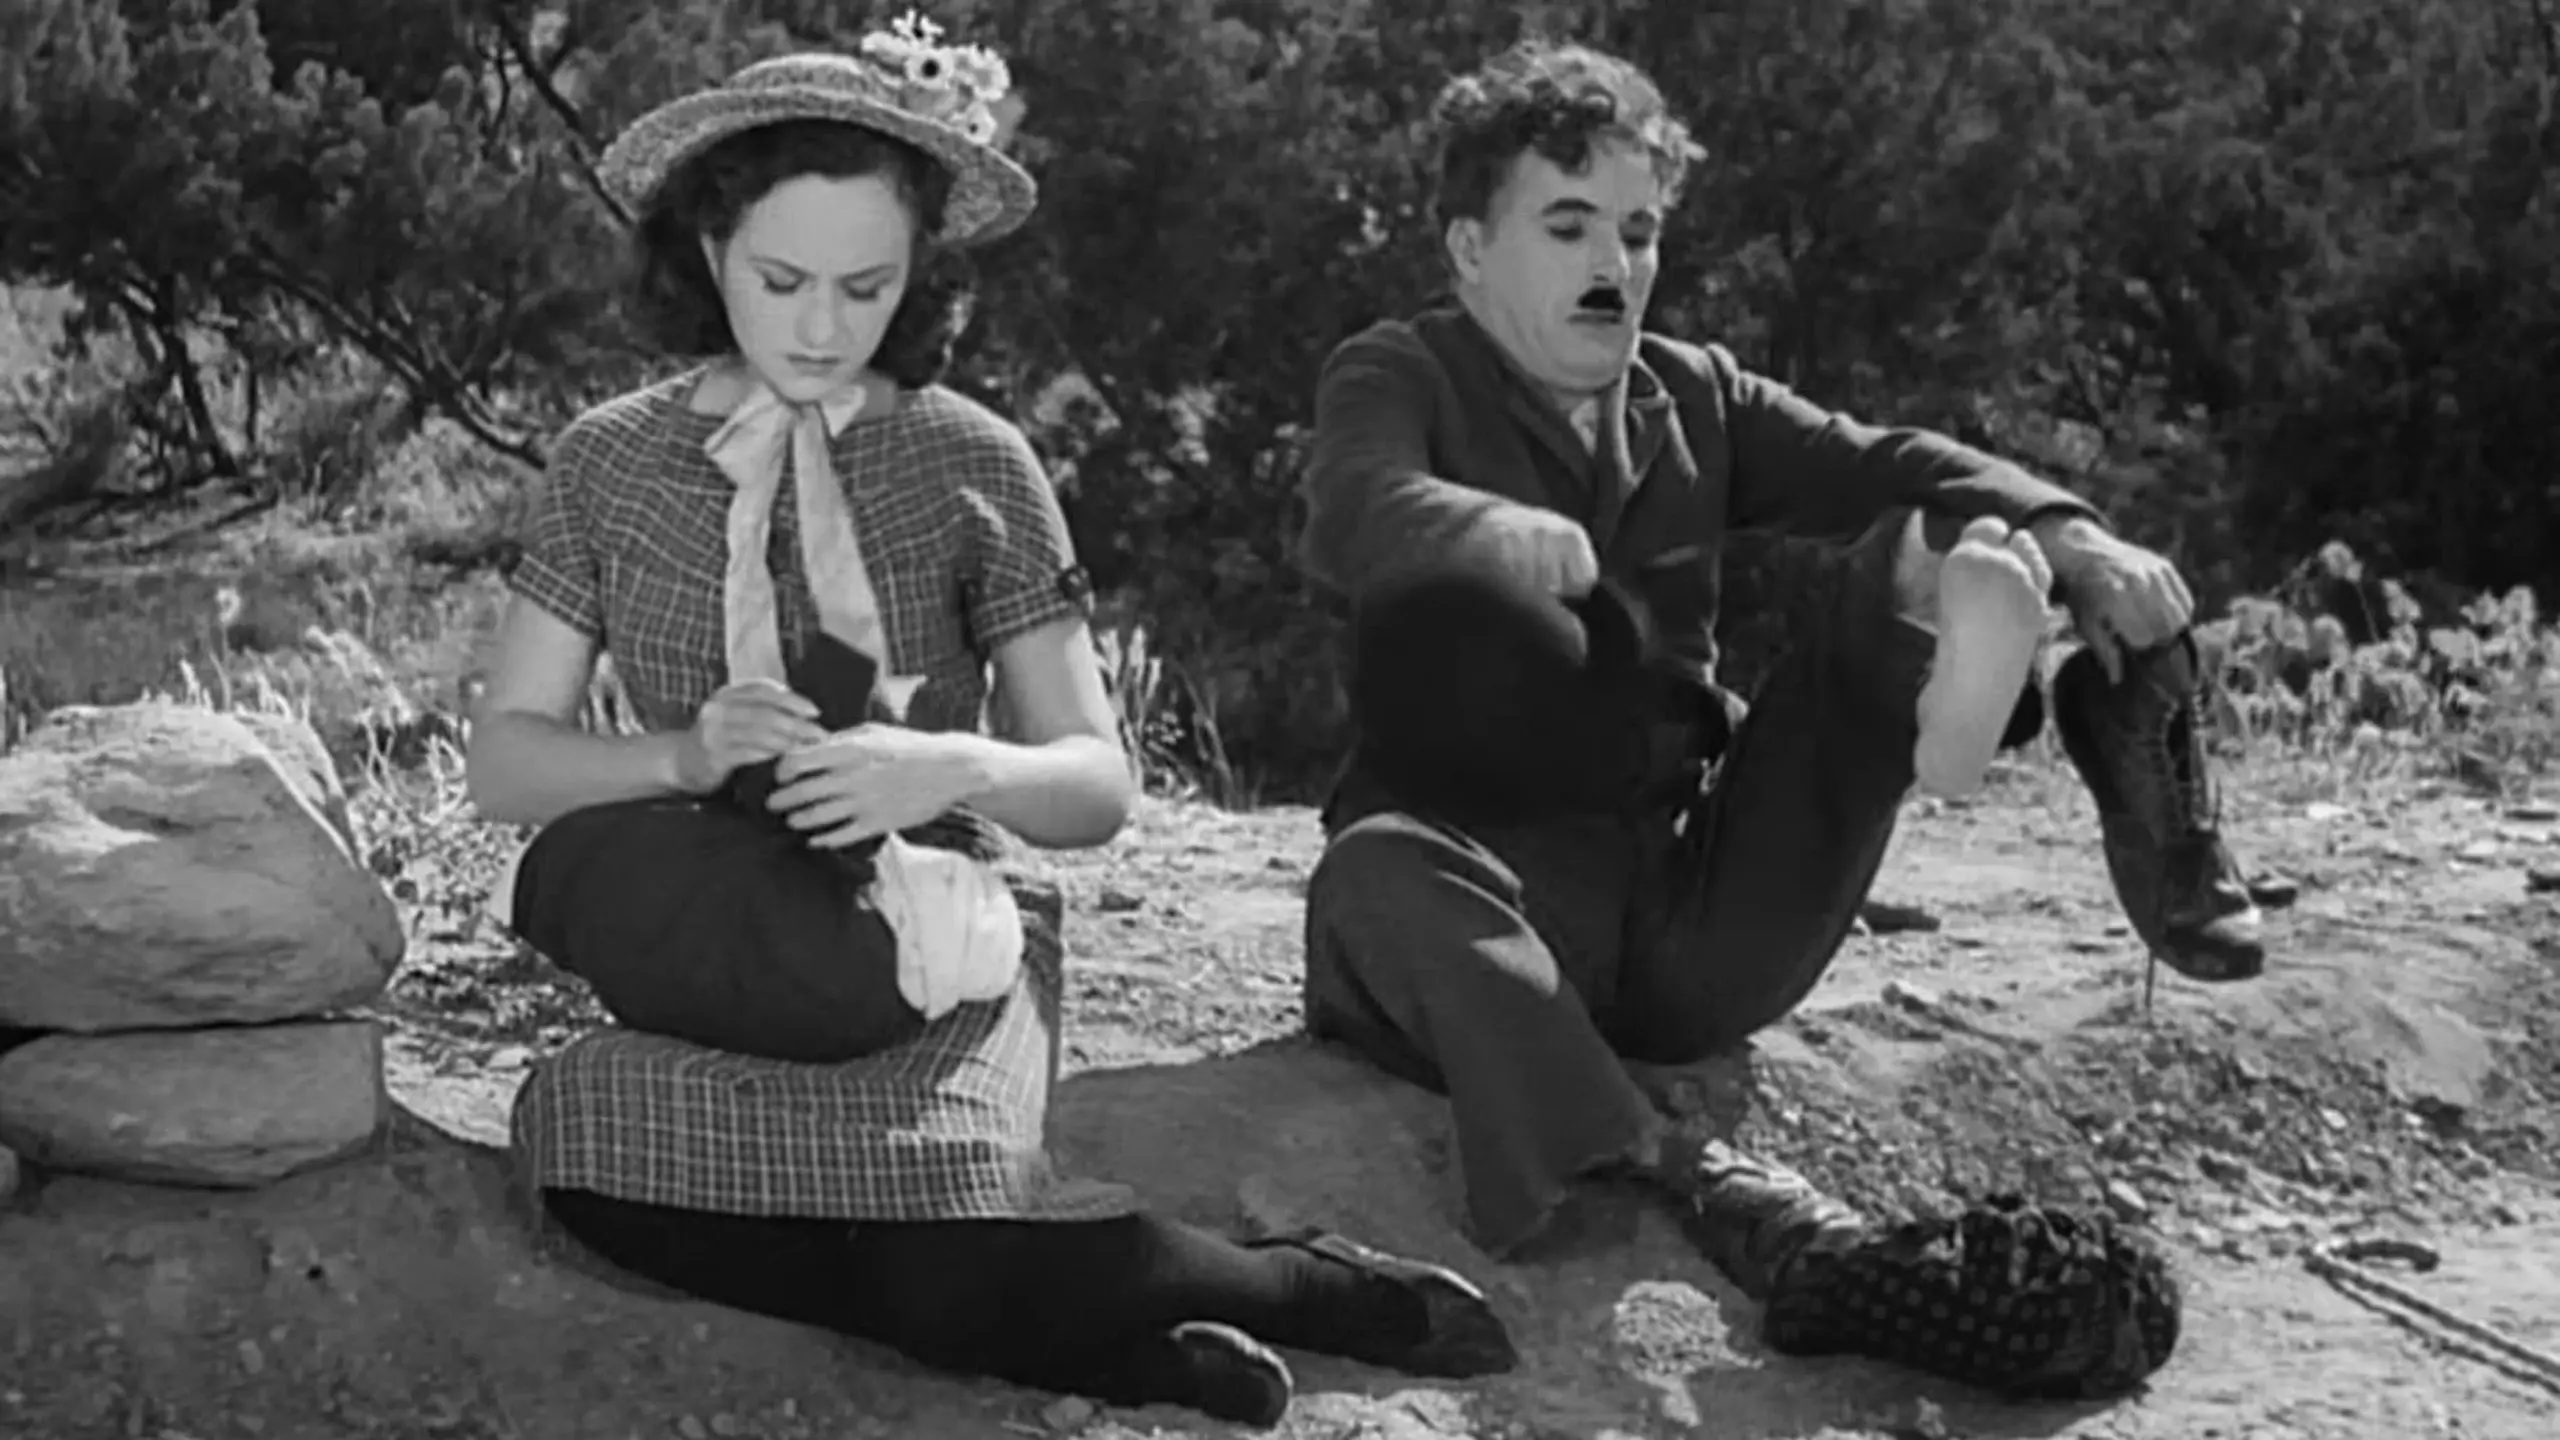 Charlie Chaplin - Der Komponist